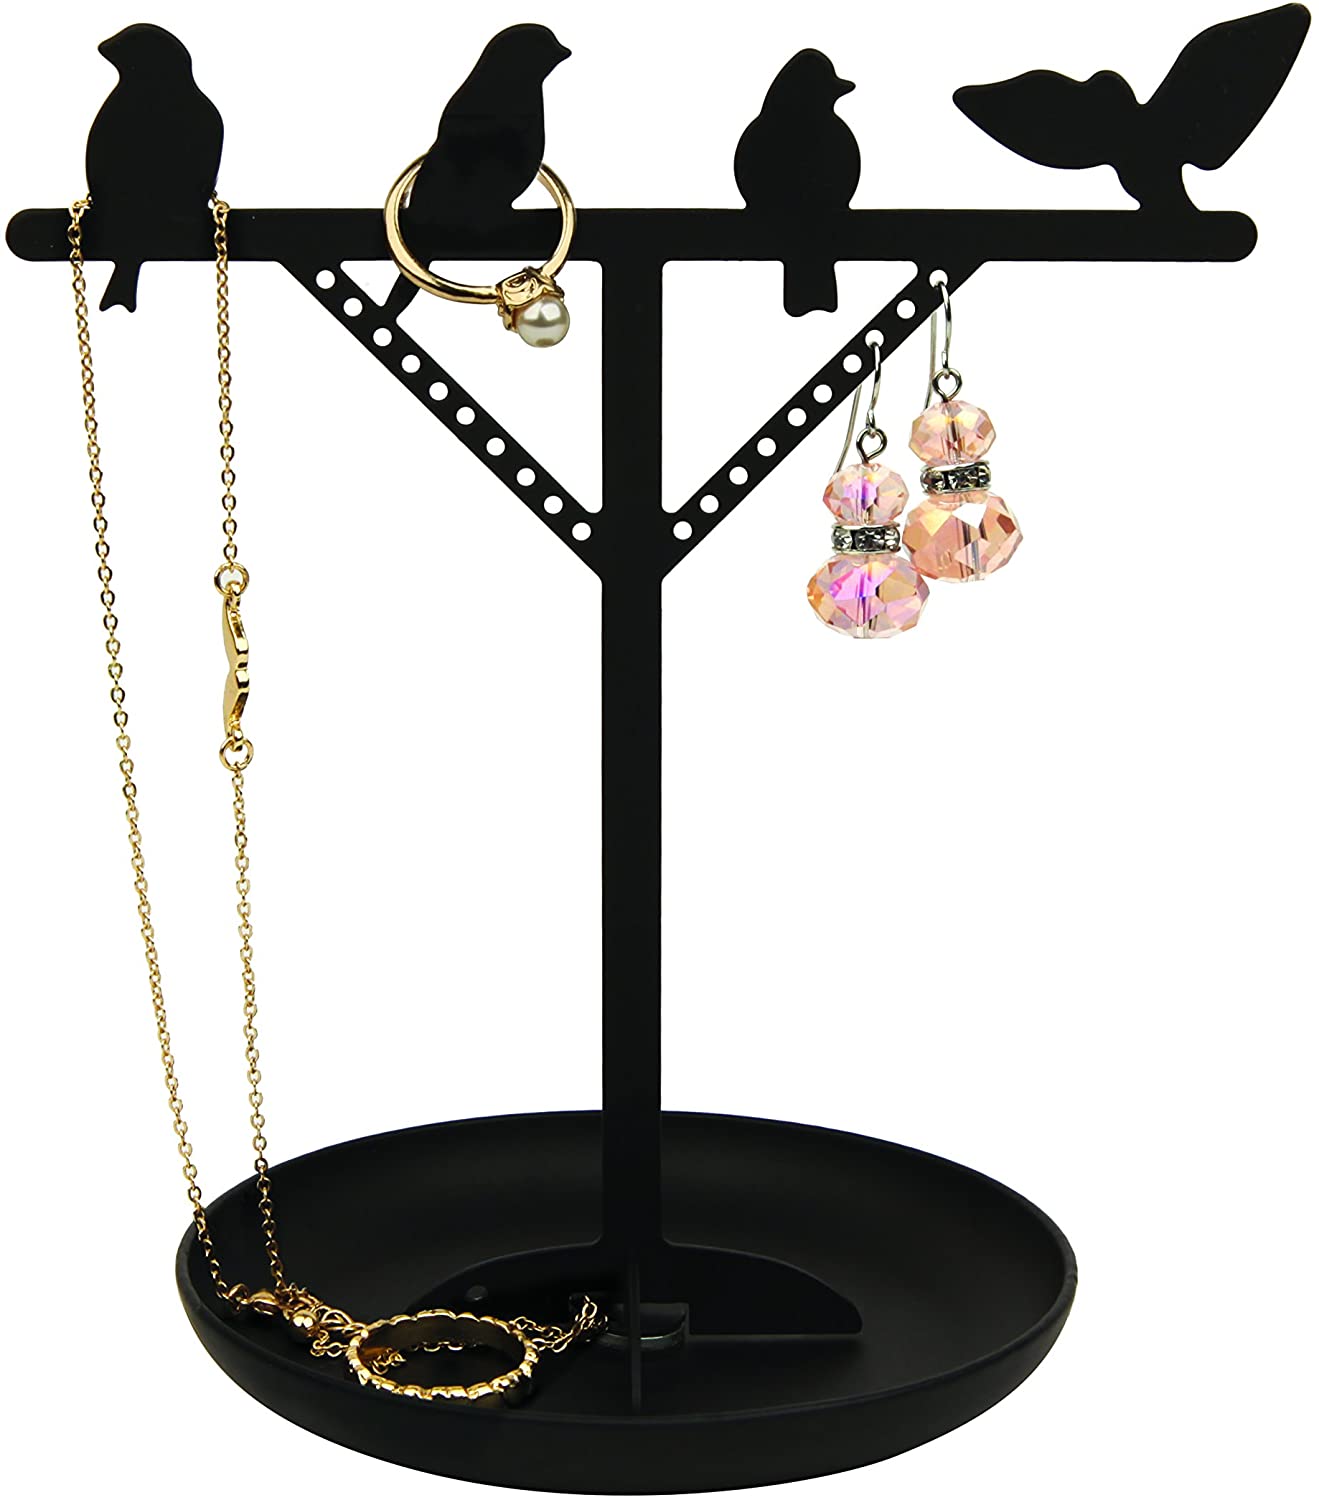 Kikkerland bird jewelry stand